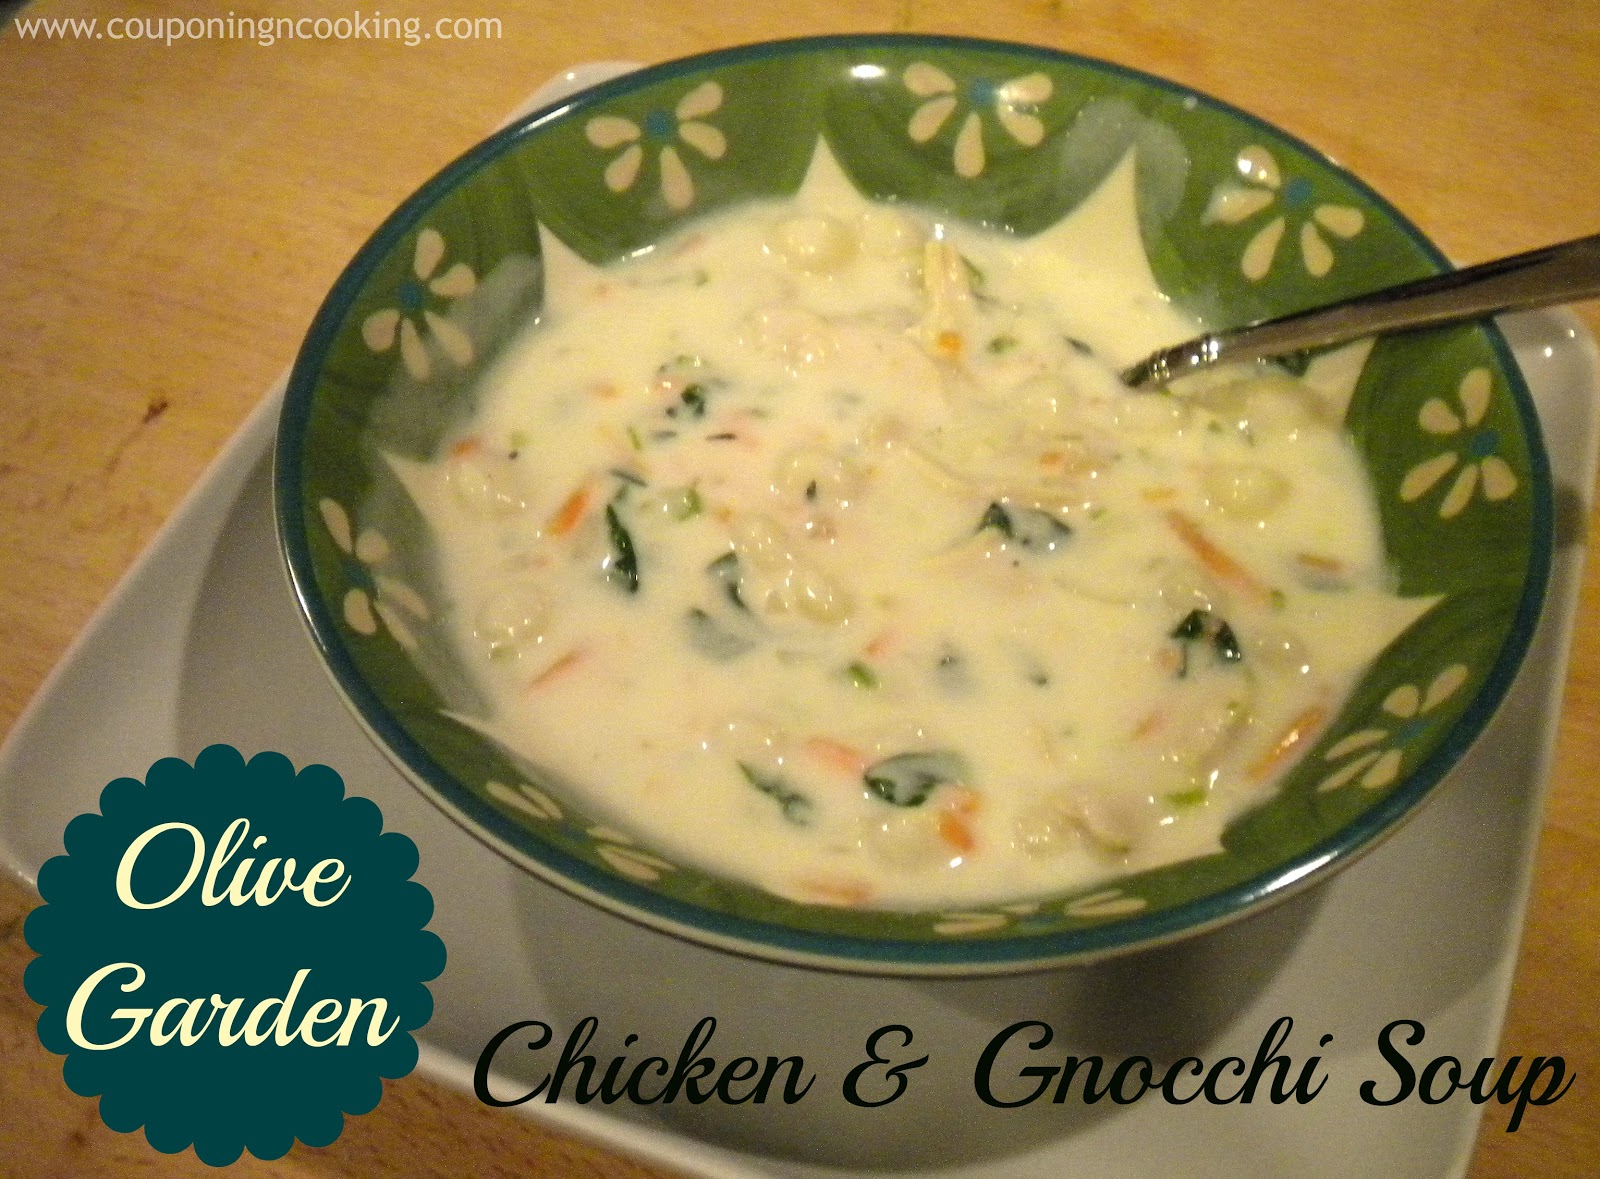 Olive Garden's Chicken & Gnocchi Soup